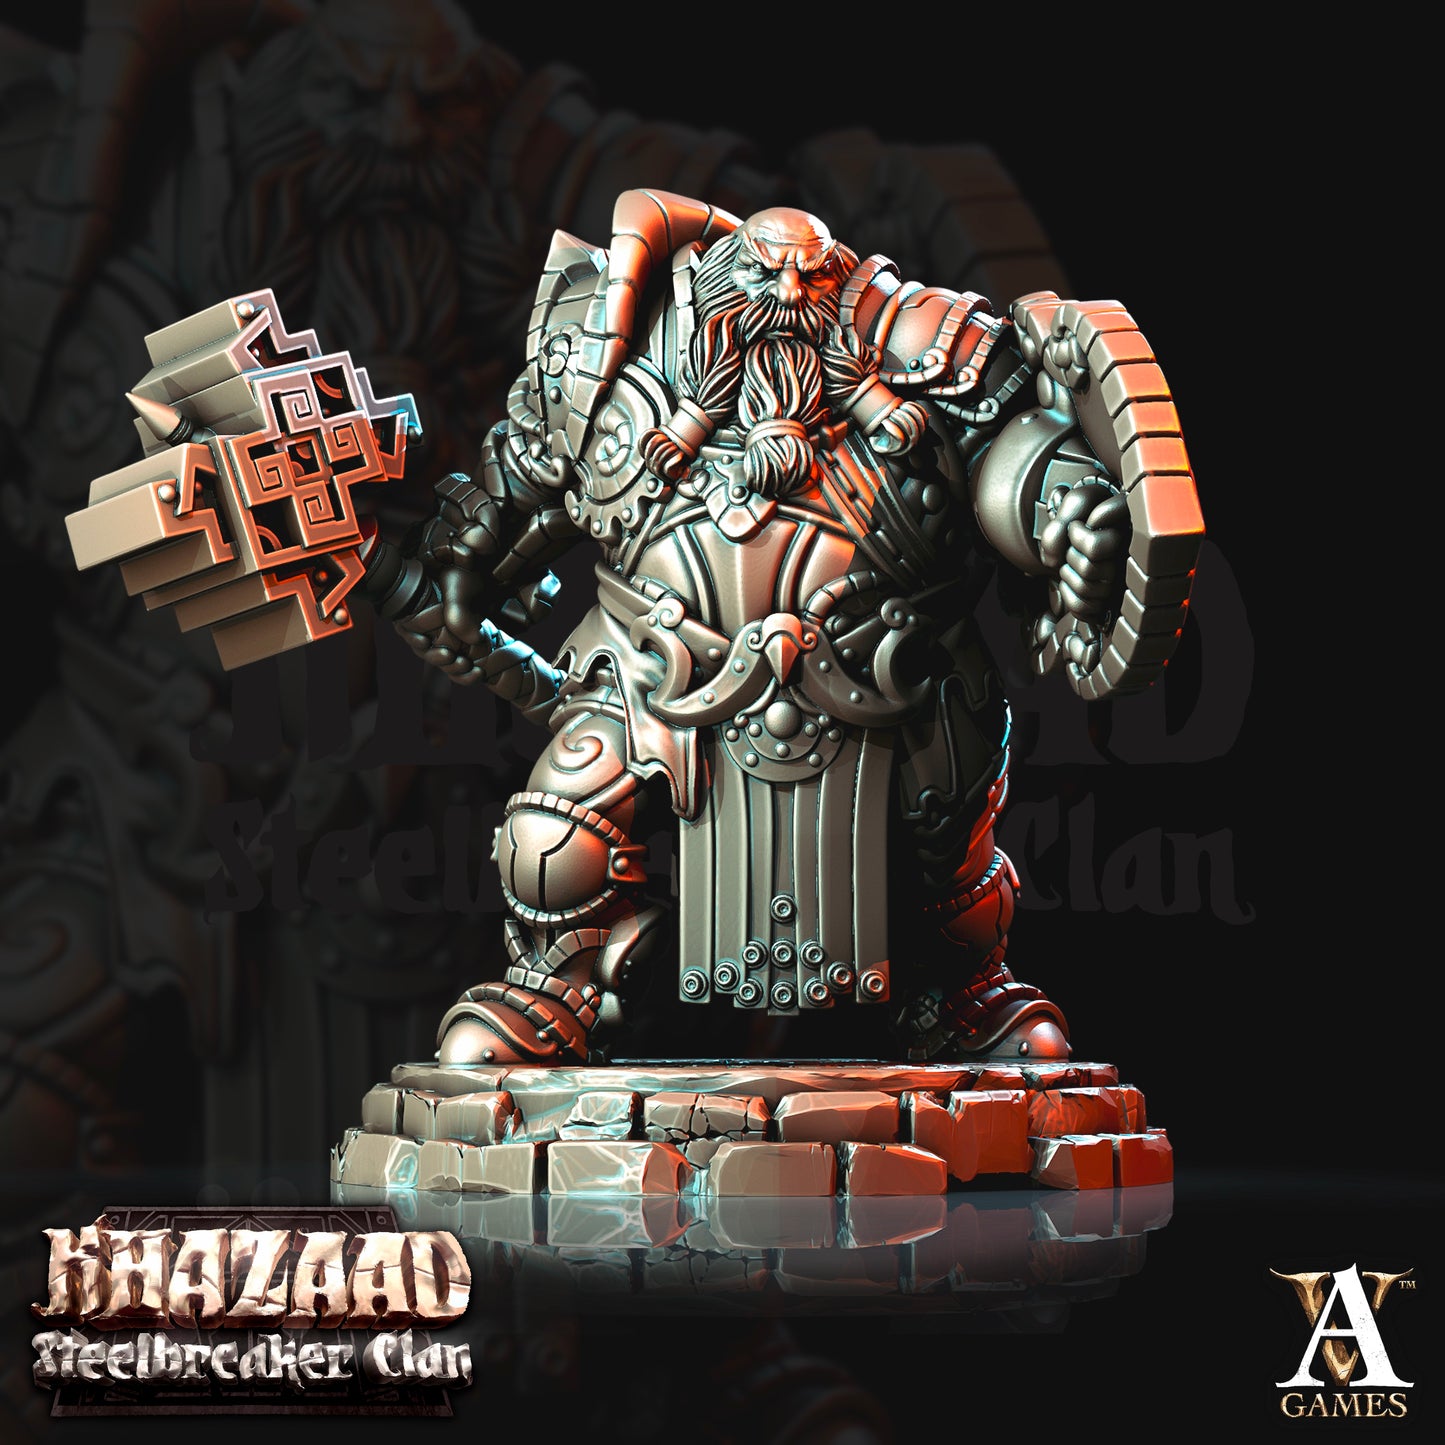 Steelbreaker Warriors - Khazaad Stealbreaker Clan